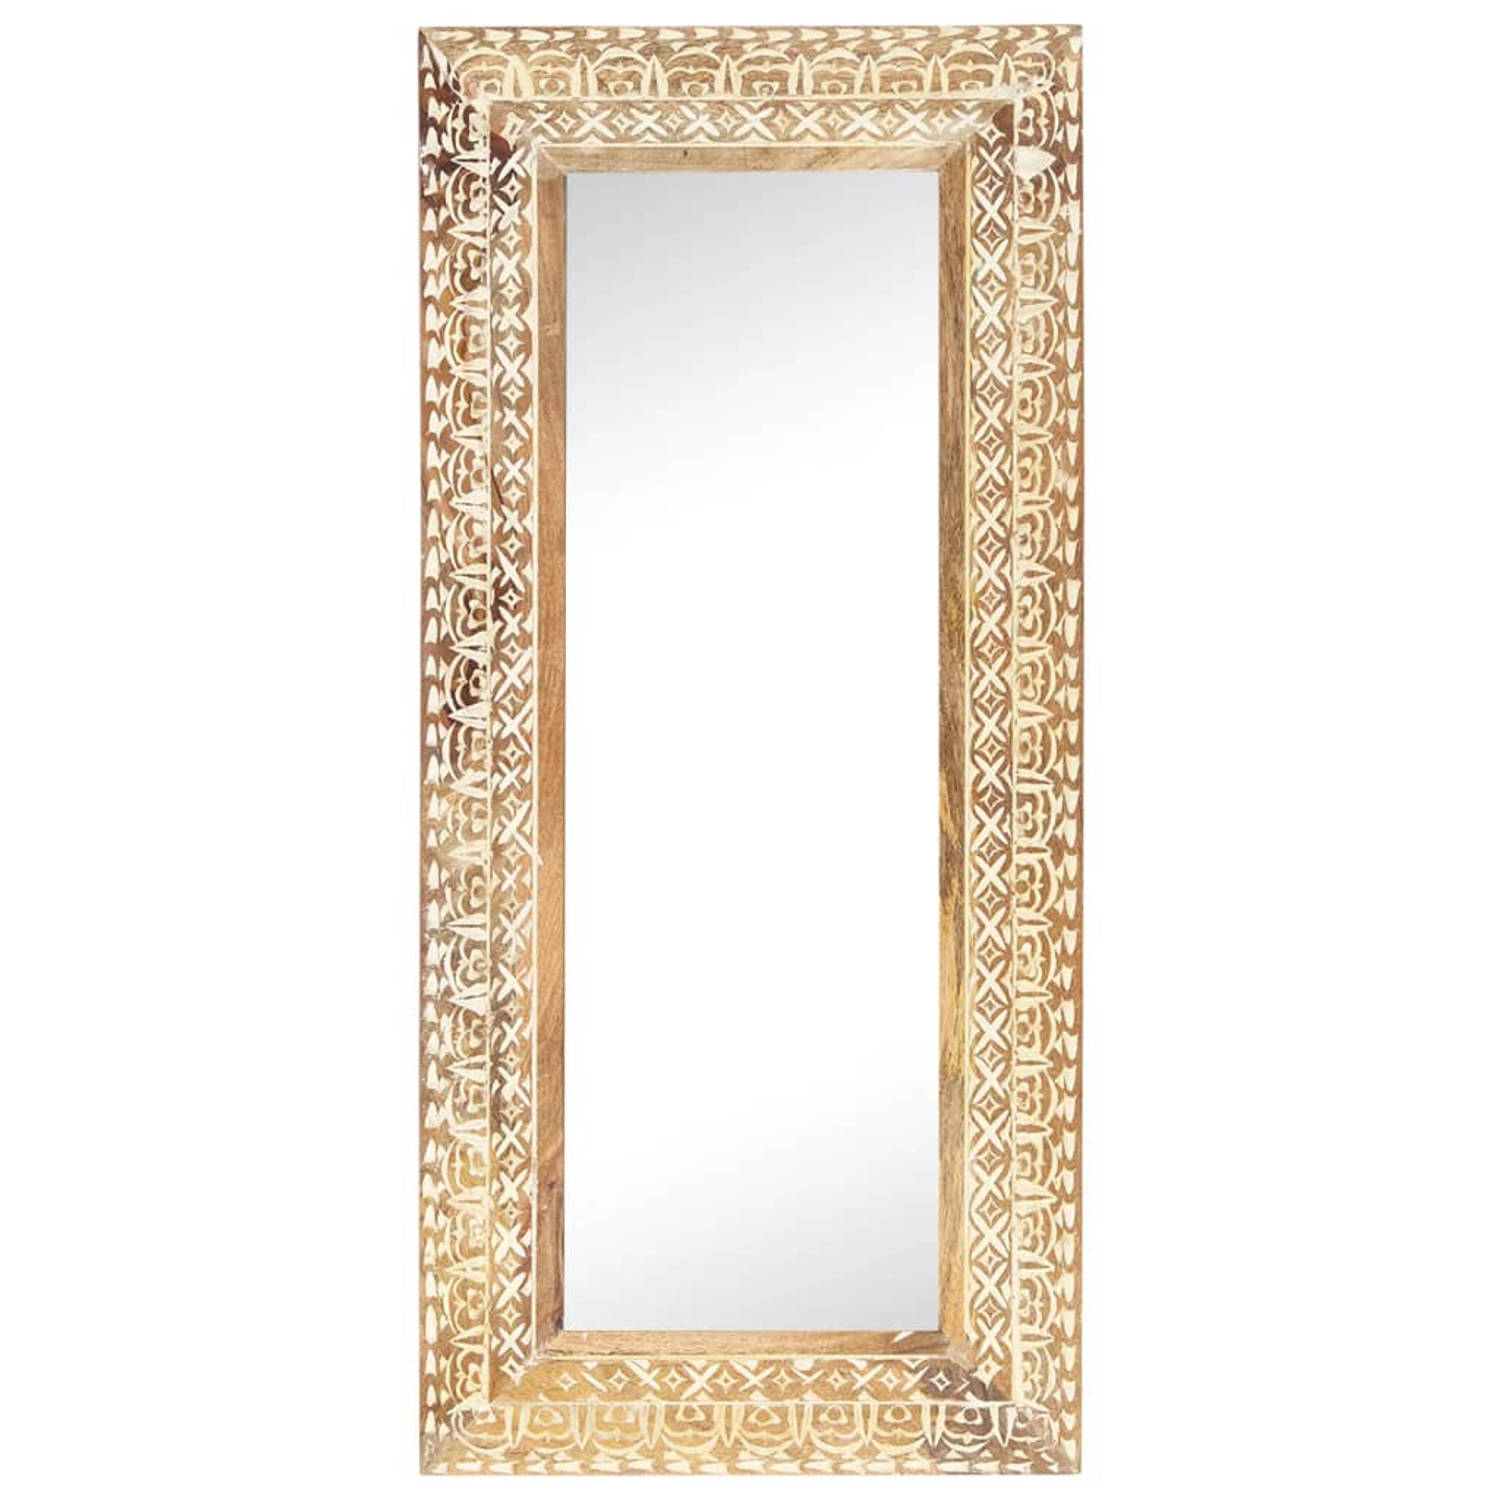 The Living Store - Handgesneden houten spiegel - Decoratie voor huis - 110 x 50 x 2.6 cm - Massief mangohout